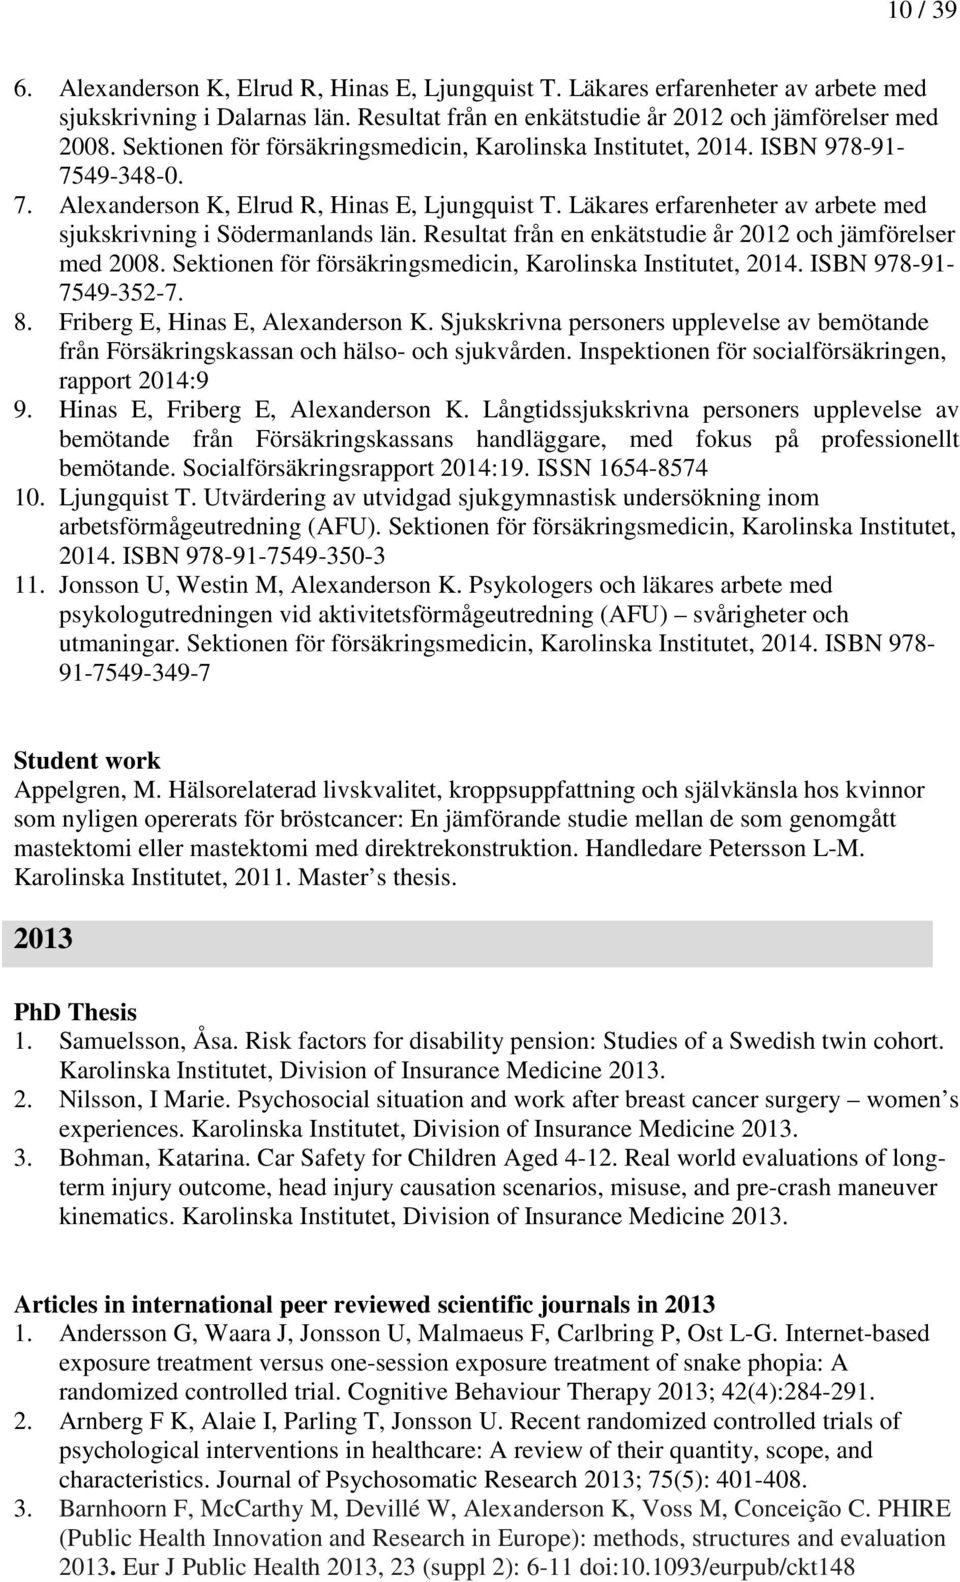 Läkares erfarenheter av arbete med sjukskrivning i Södermanlands län. Resultat från en enkätstudie år 2012 och jämförelser med 2008. Sektionen för försäkringsmedicin, Karolinska Institutet, 2014.